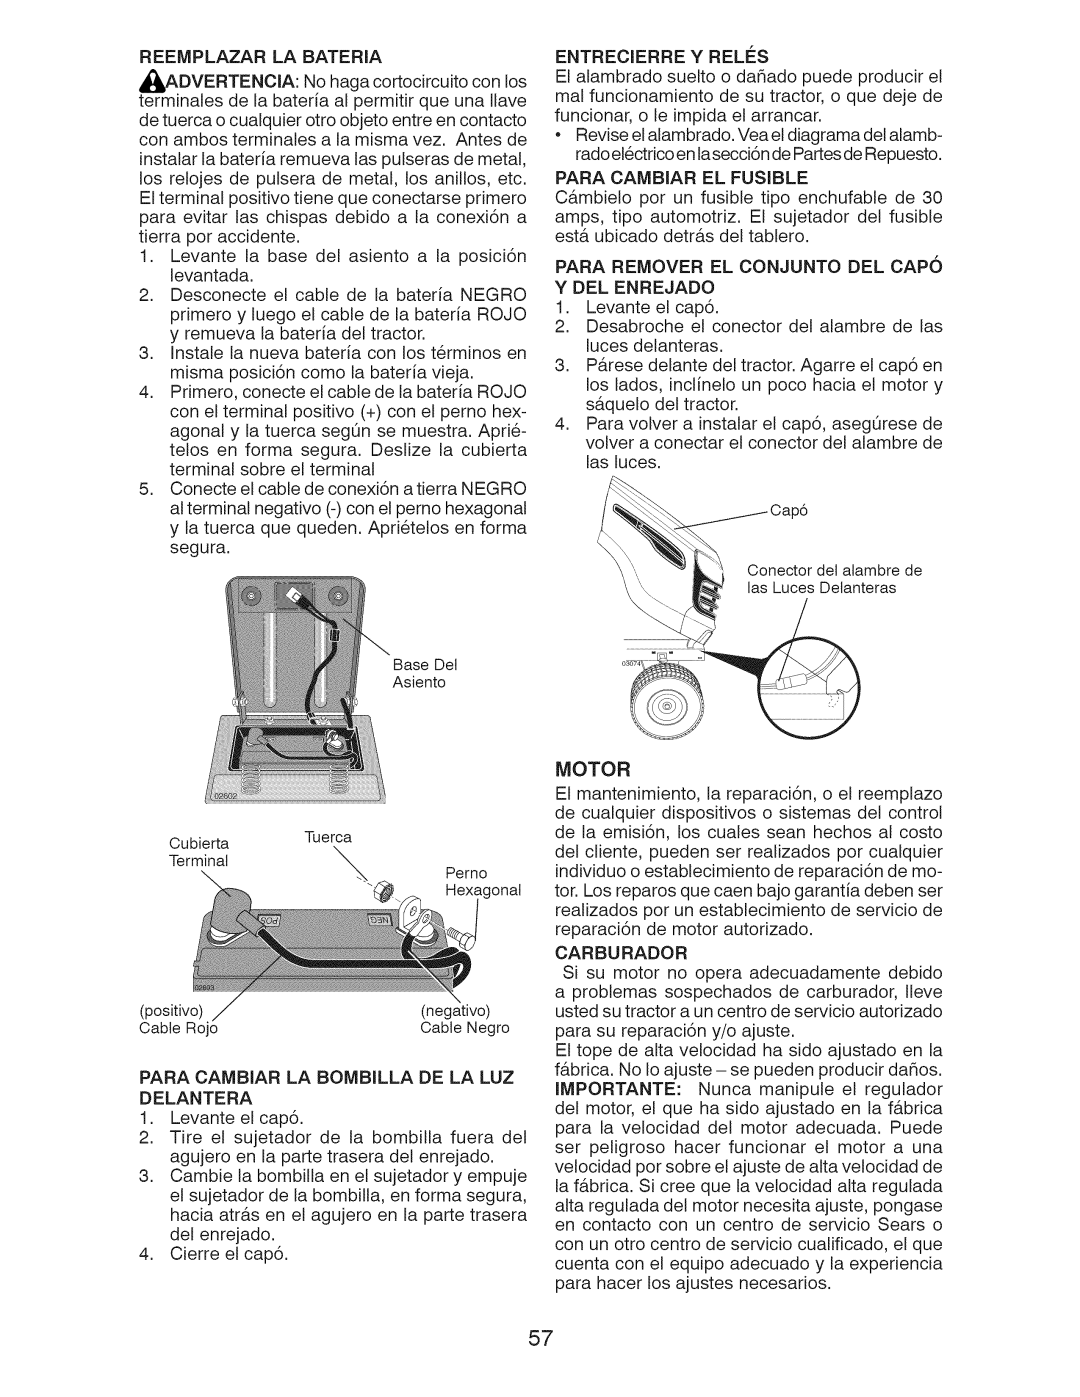 Craftsman 917.28922 owner manual Para Cambiar El Fusible, Para Remover El Conjunto Del Capo Y Del Enrejado, Carburador 